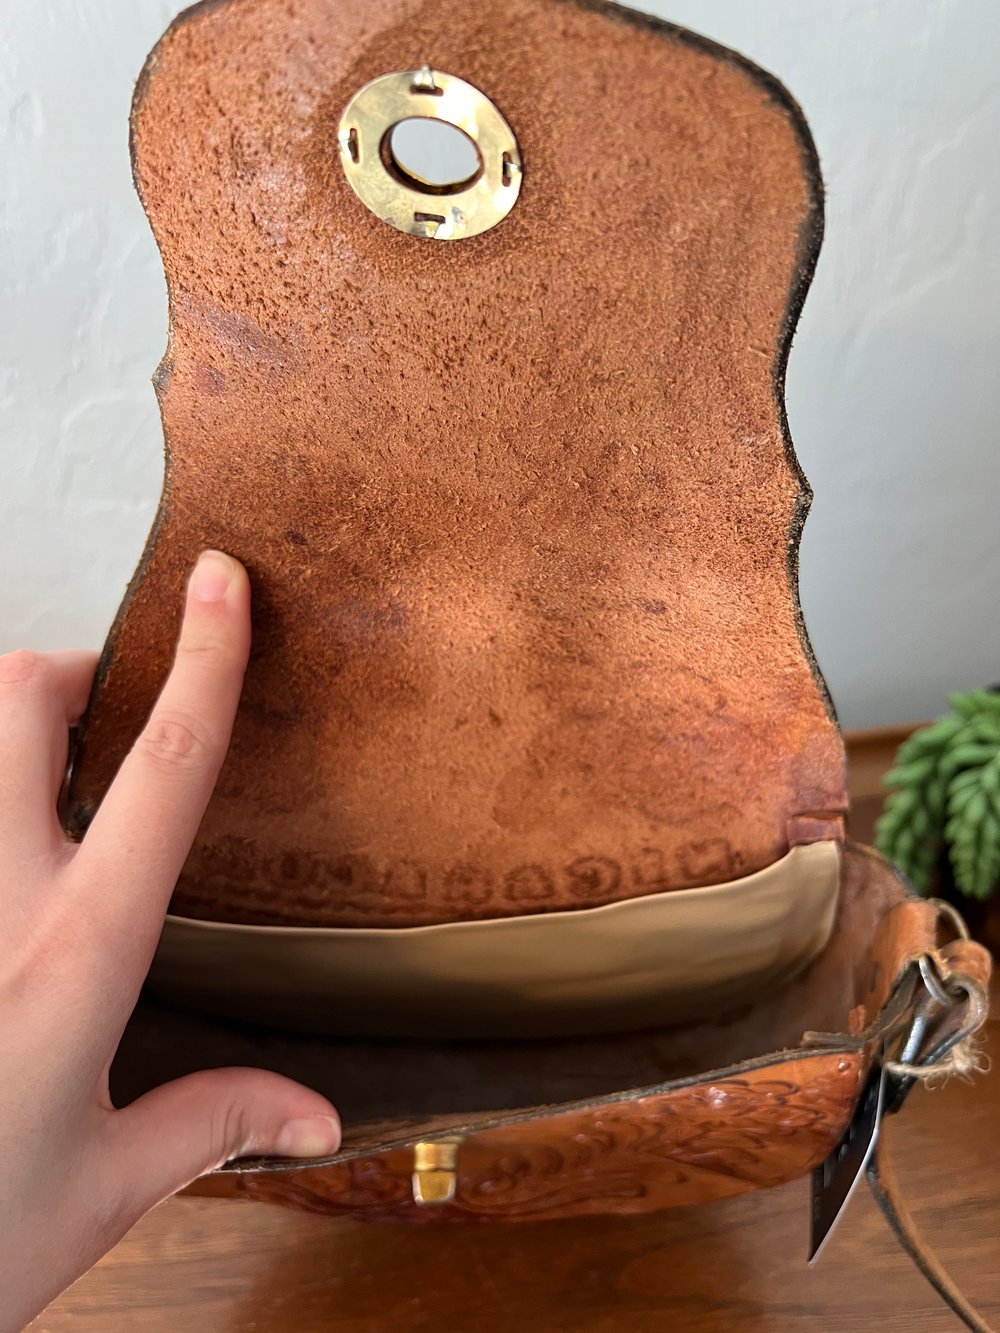 Vintage Tooled Leather Nicaragua Purse